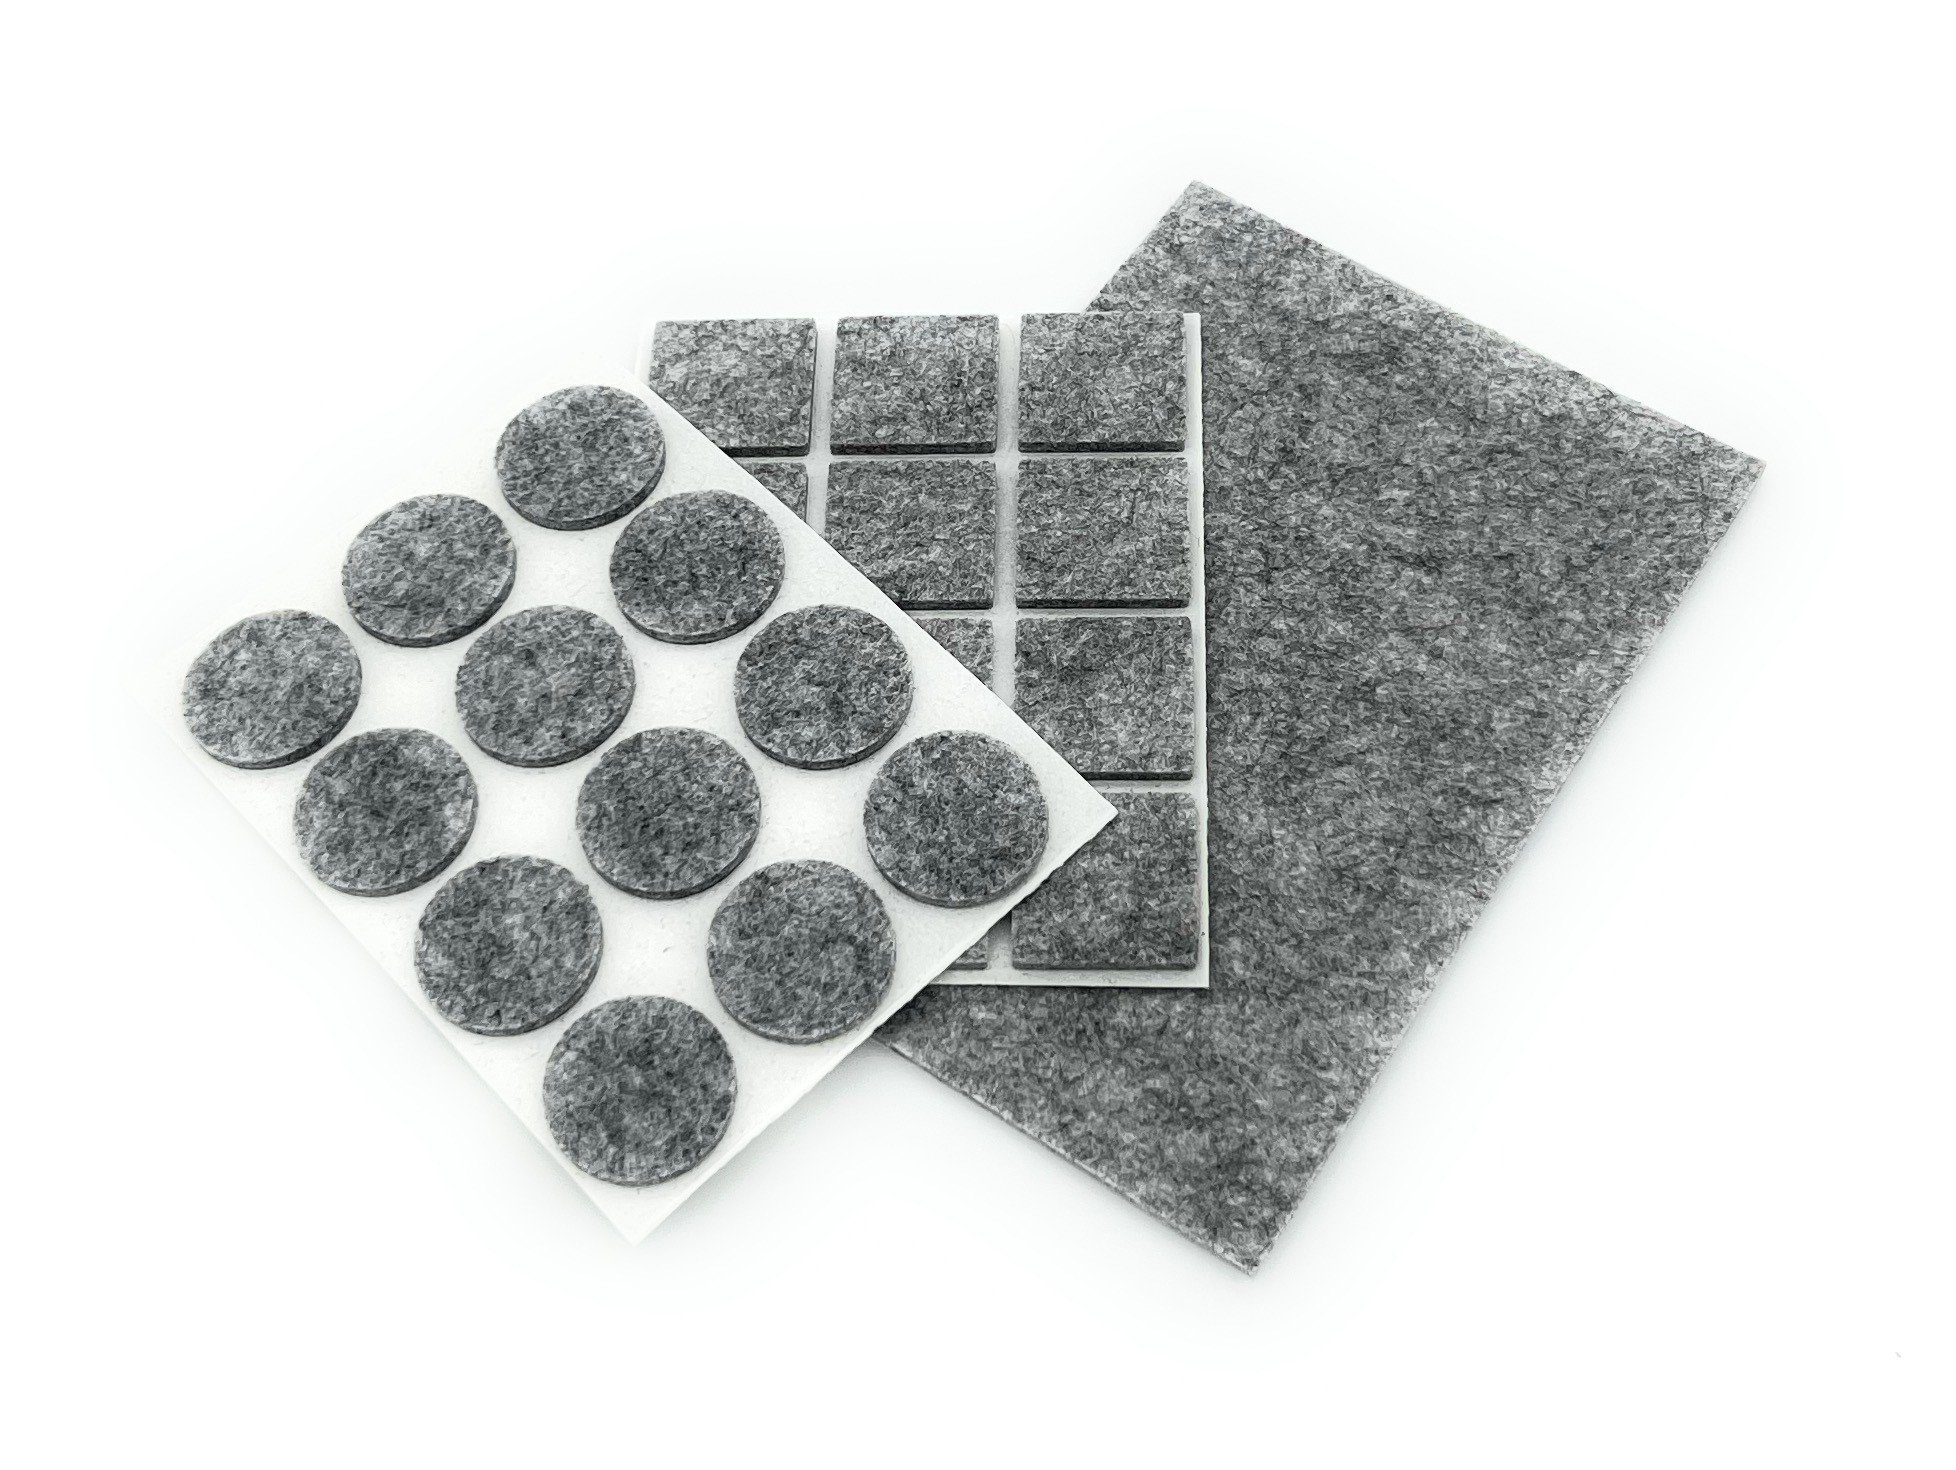 Kaiser plastic Filzgleiter Kaiser plastic Möbelgleiter, selbstklebend oder zum zuschneiden grau